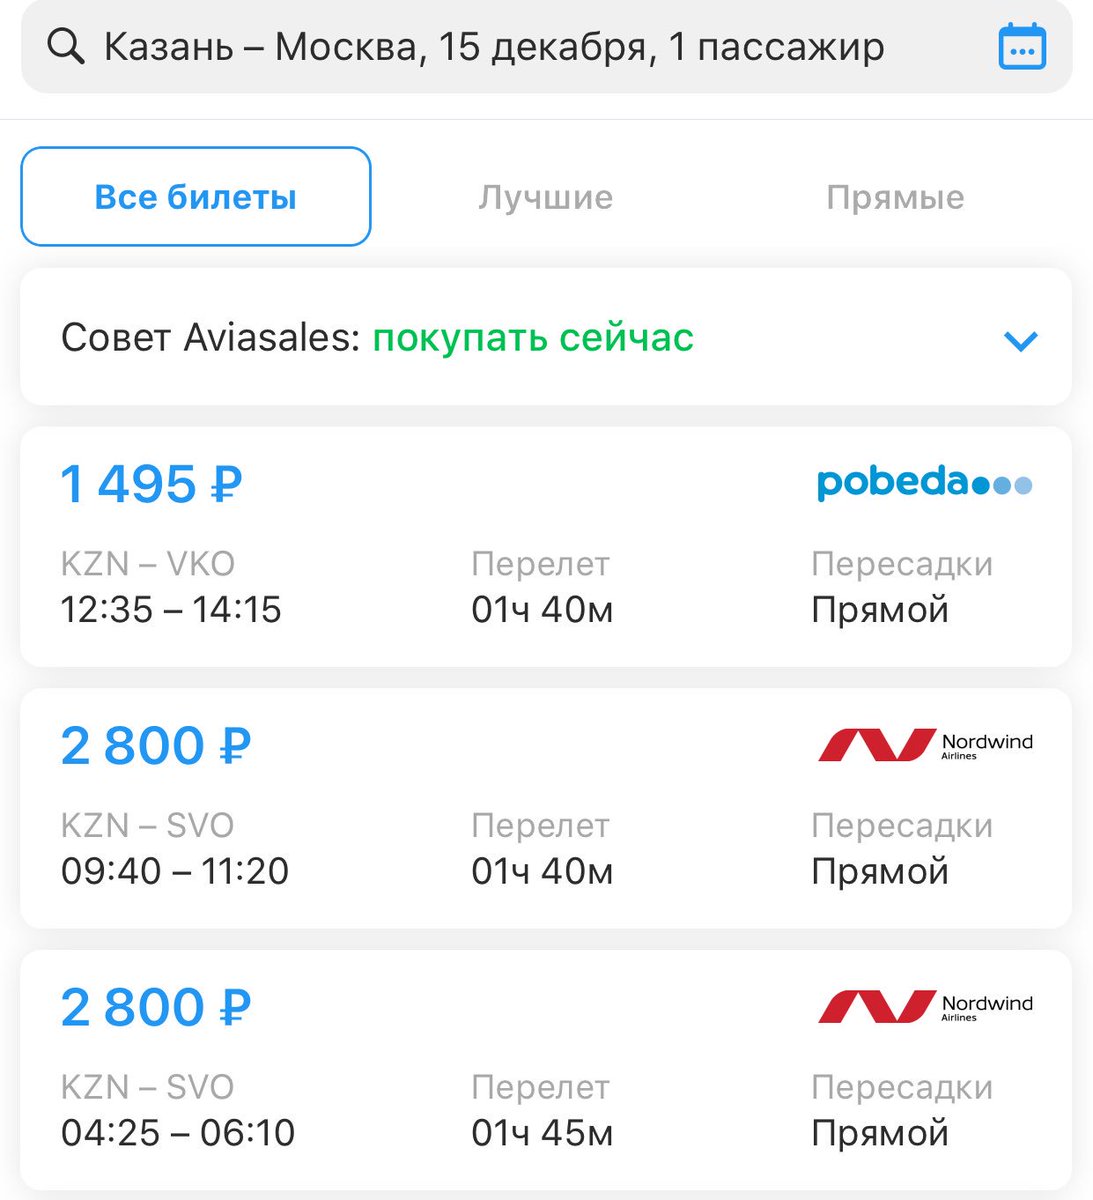 цена авиабилета от казани до москвы